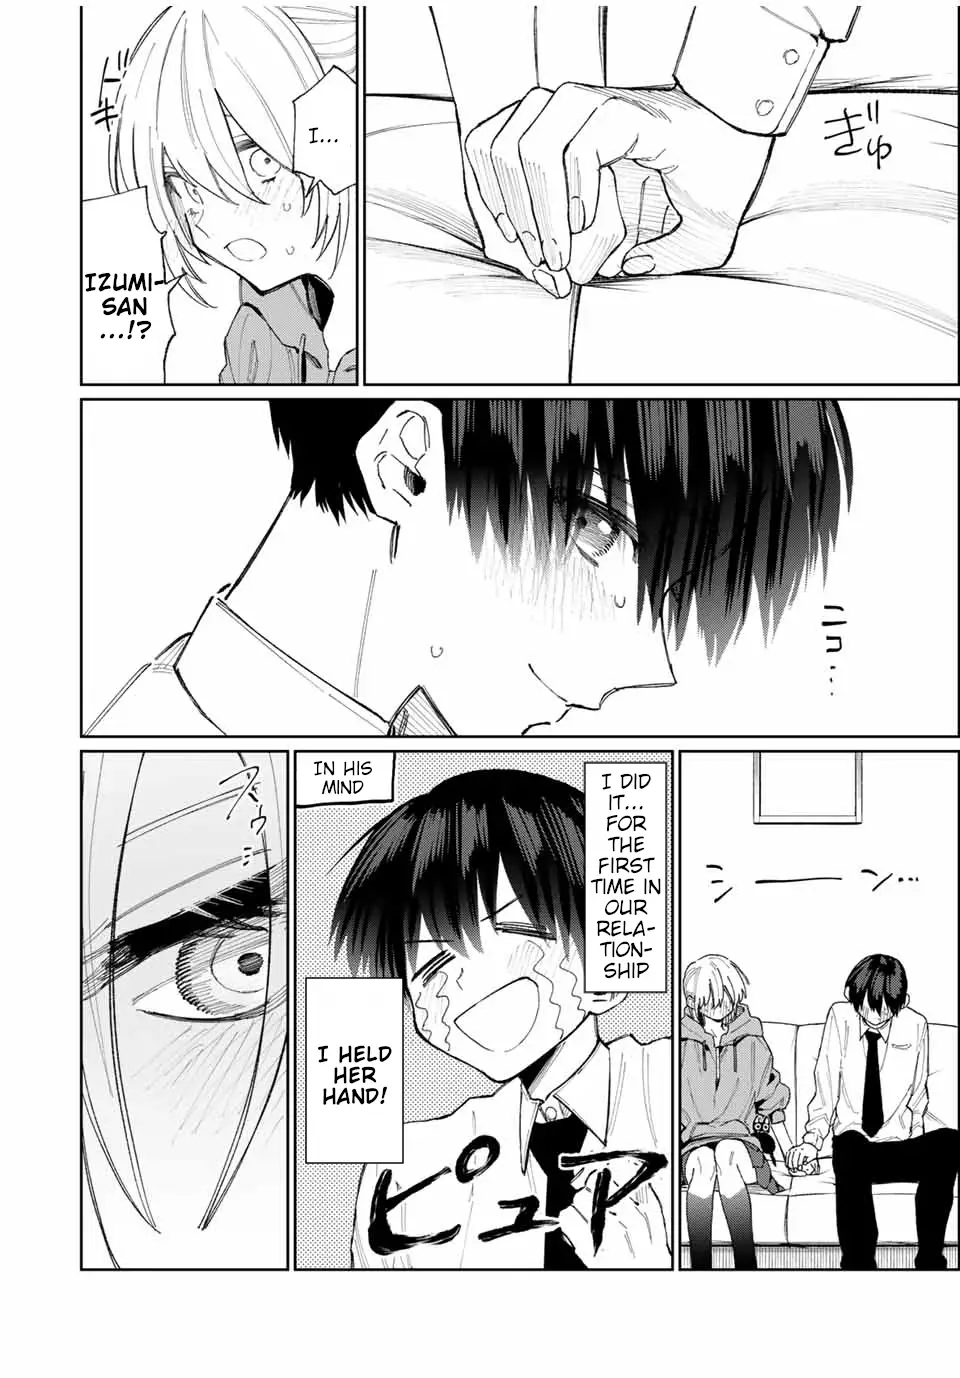 Shikimori's Not Just A Cutie - 23 page 7